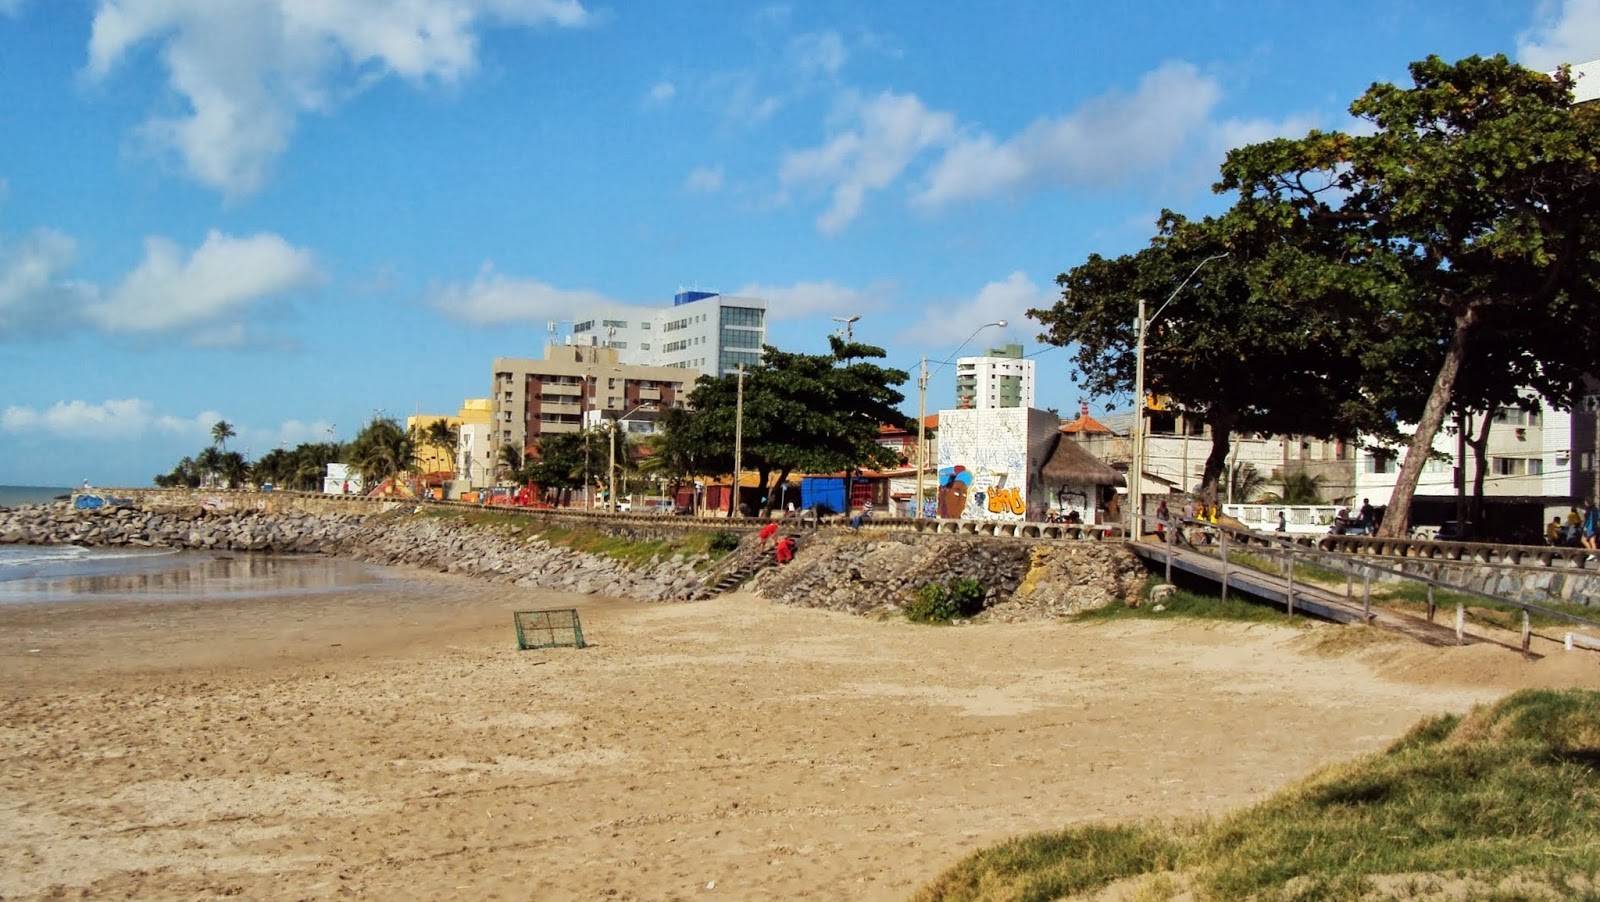 Zdjęcie Praia de Rio Doce z poziomem czystości wysoki